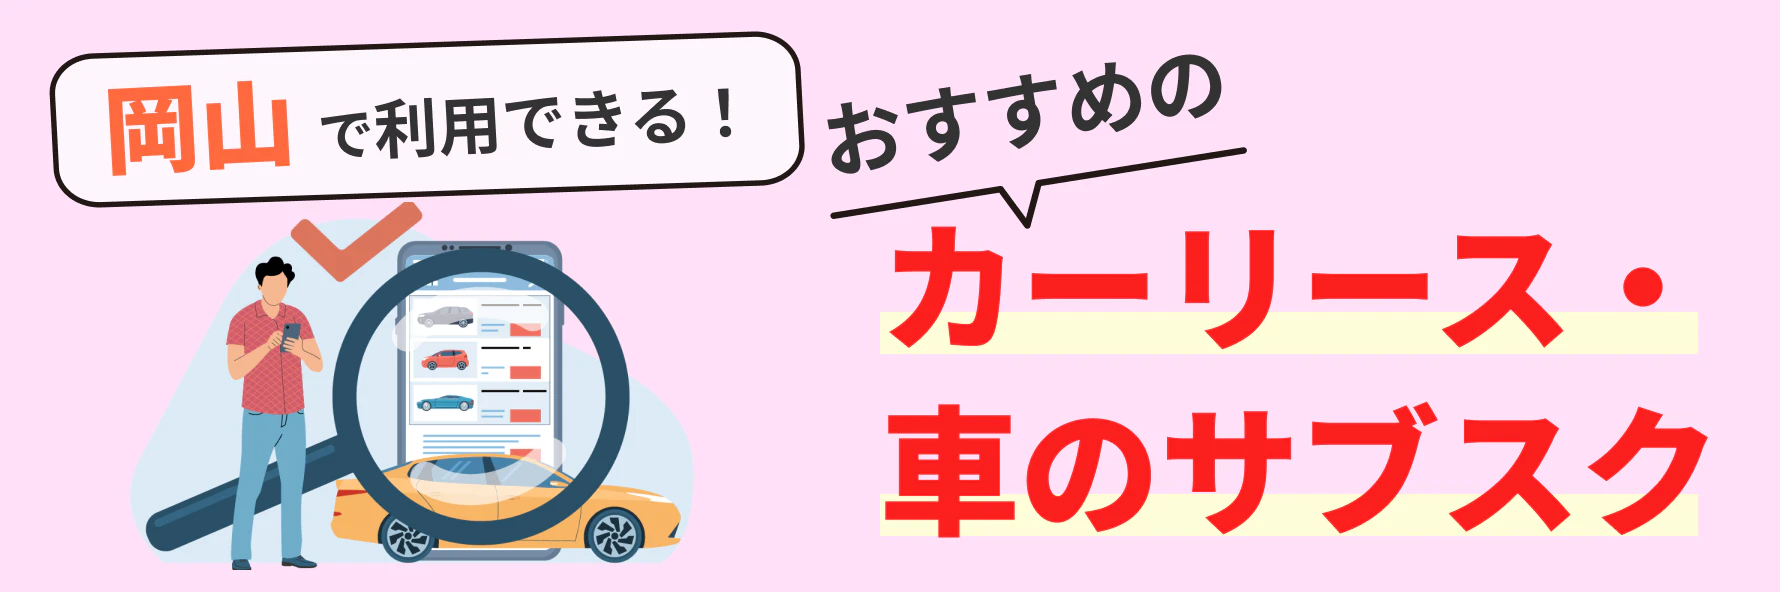 岡山で利用できるカーリース会社（車のサブスク）について、料金やサービスの特徴を紹介するとともに、カーリース会社の選び方について解説する記事であることを示すタイトル下画像